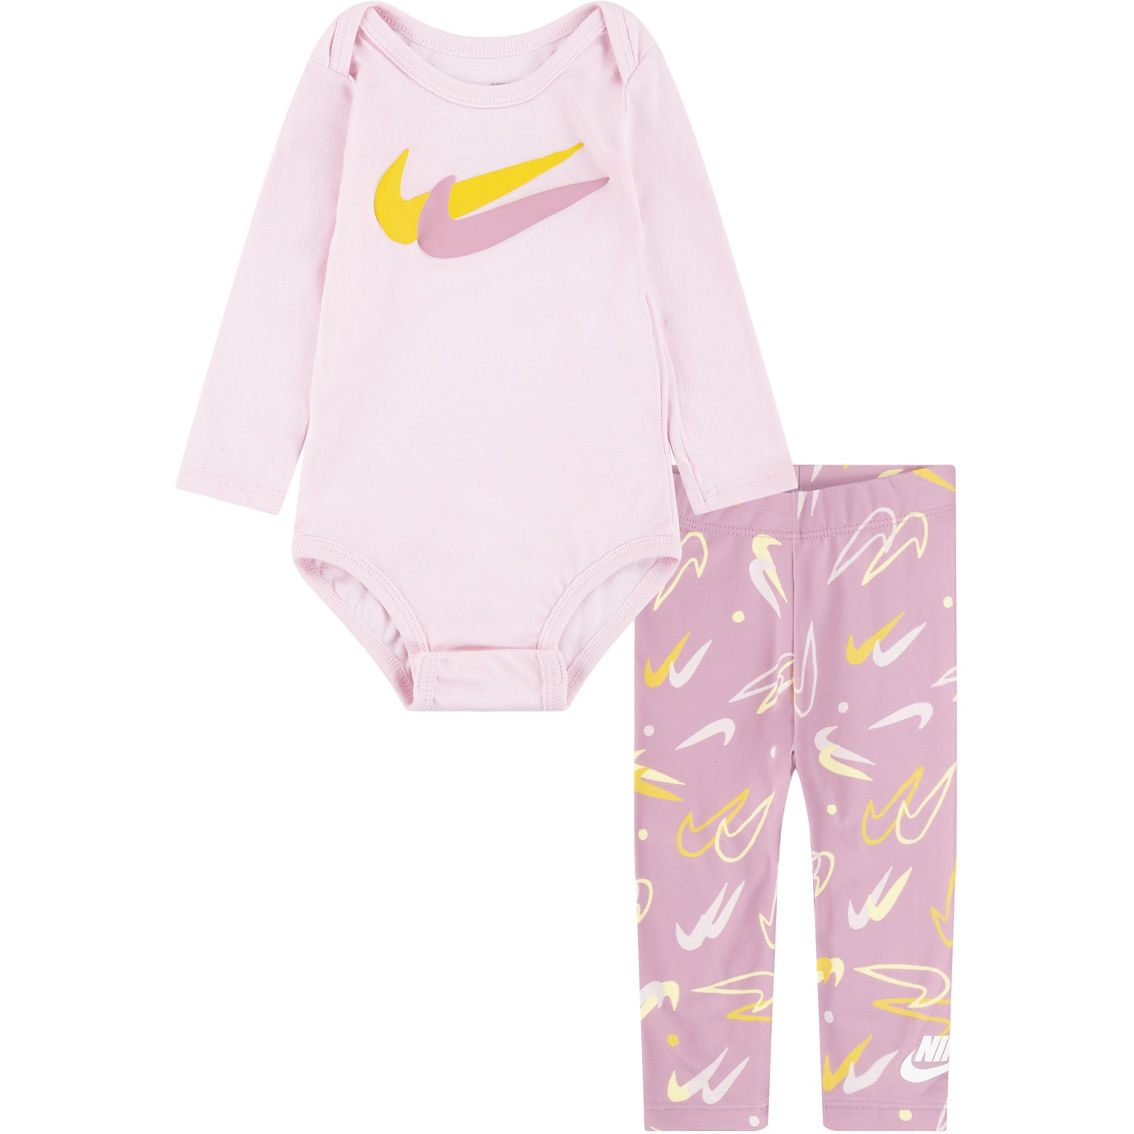 Nike Infant Girls Bodysuit and Leggings 2 pc. Set